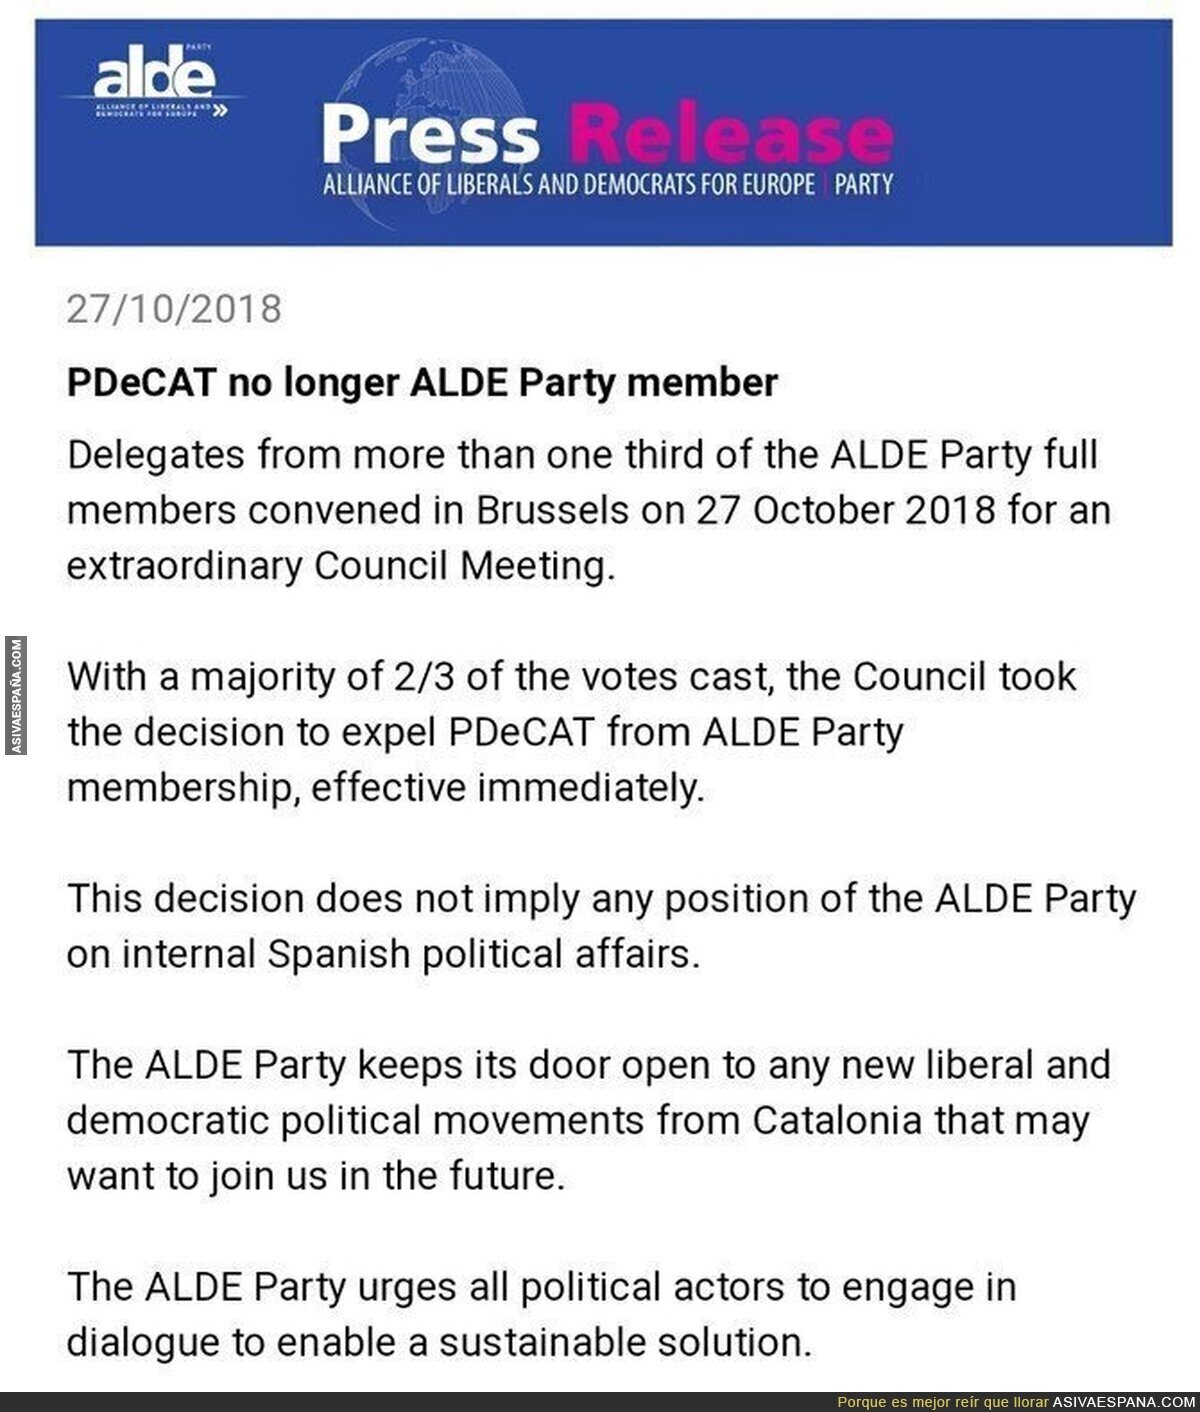 ALDE expulsa al PDeCat